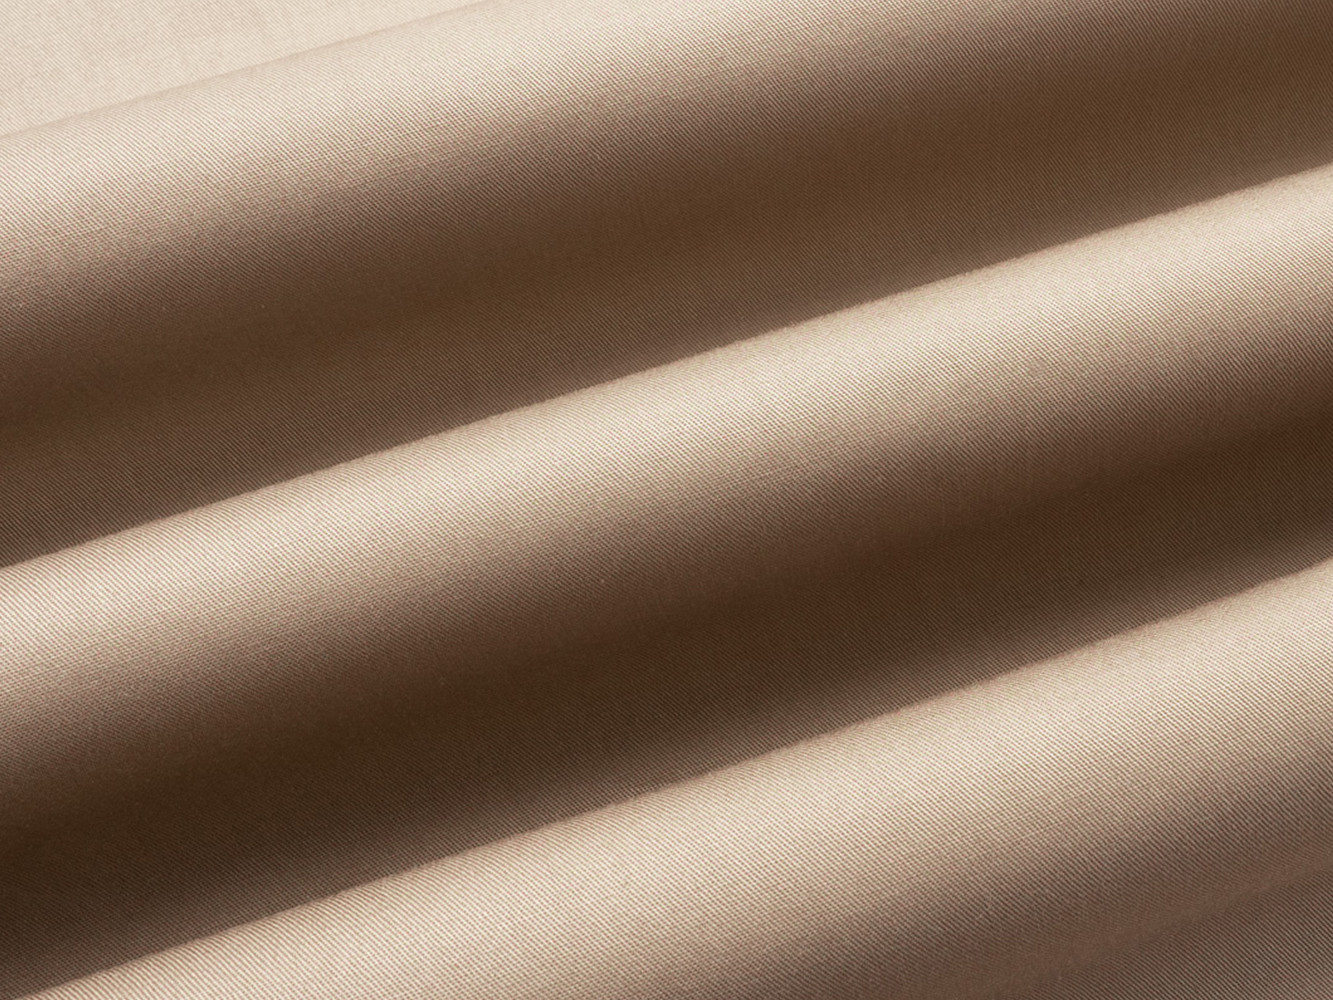 Простыня  Моноспейс бежевый на резинке Бежевый, сатин, 1800 х 2000 х 230 мм от Первый Мебельный